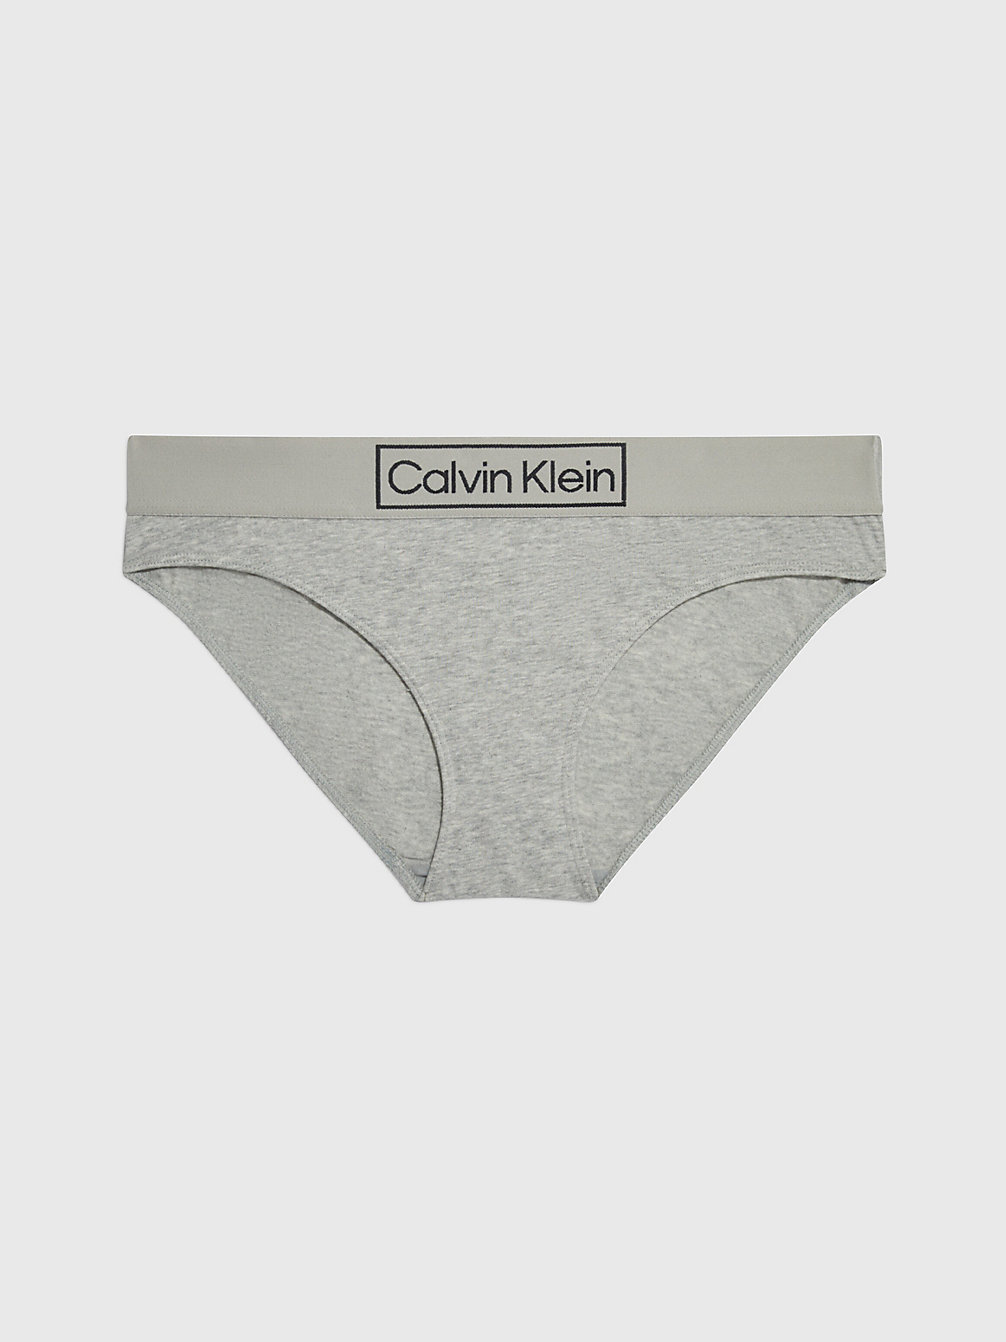 GREY HEATHER Culotte - Reimagined Heritage undefined femmes Calvin Klein